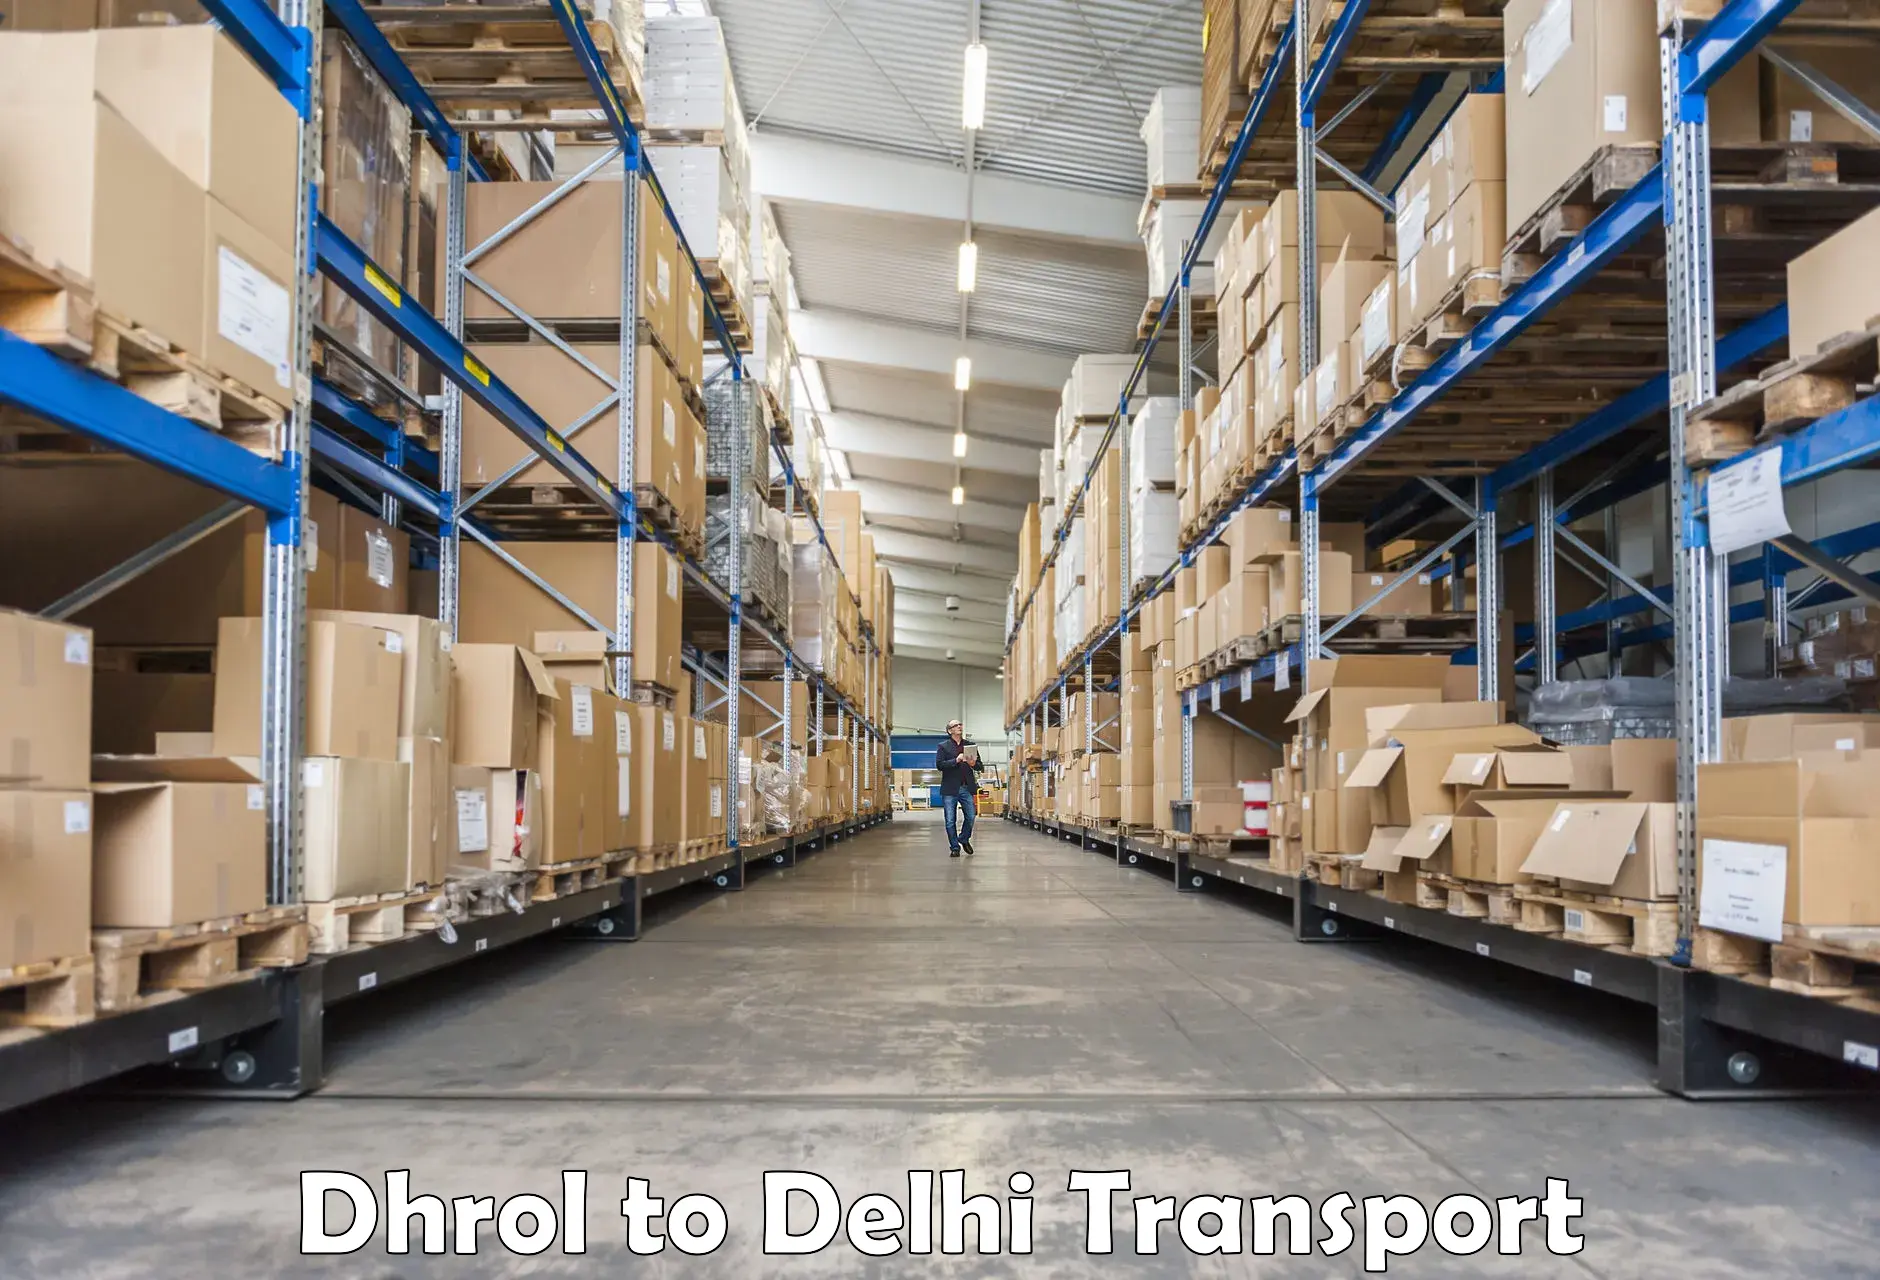 Nearest transport service Dhrol to Jhilmil